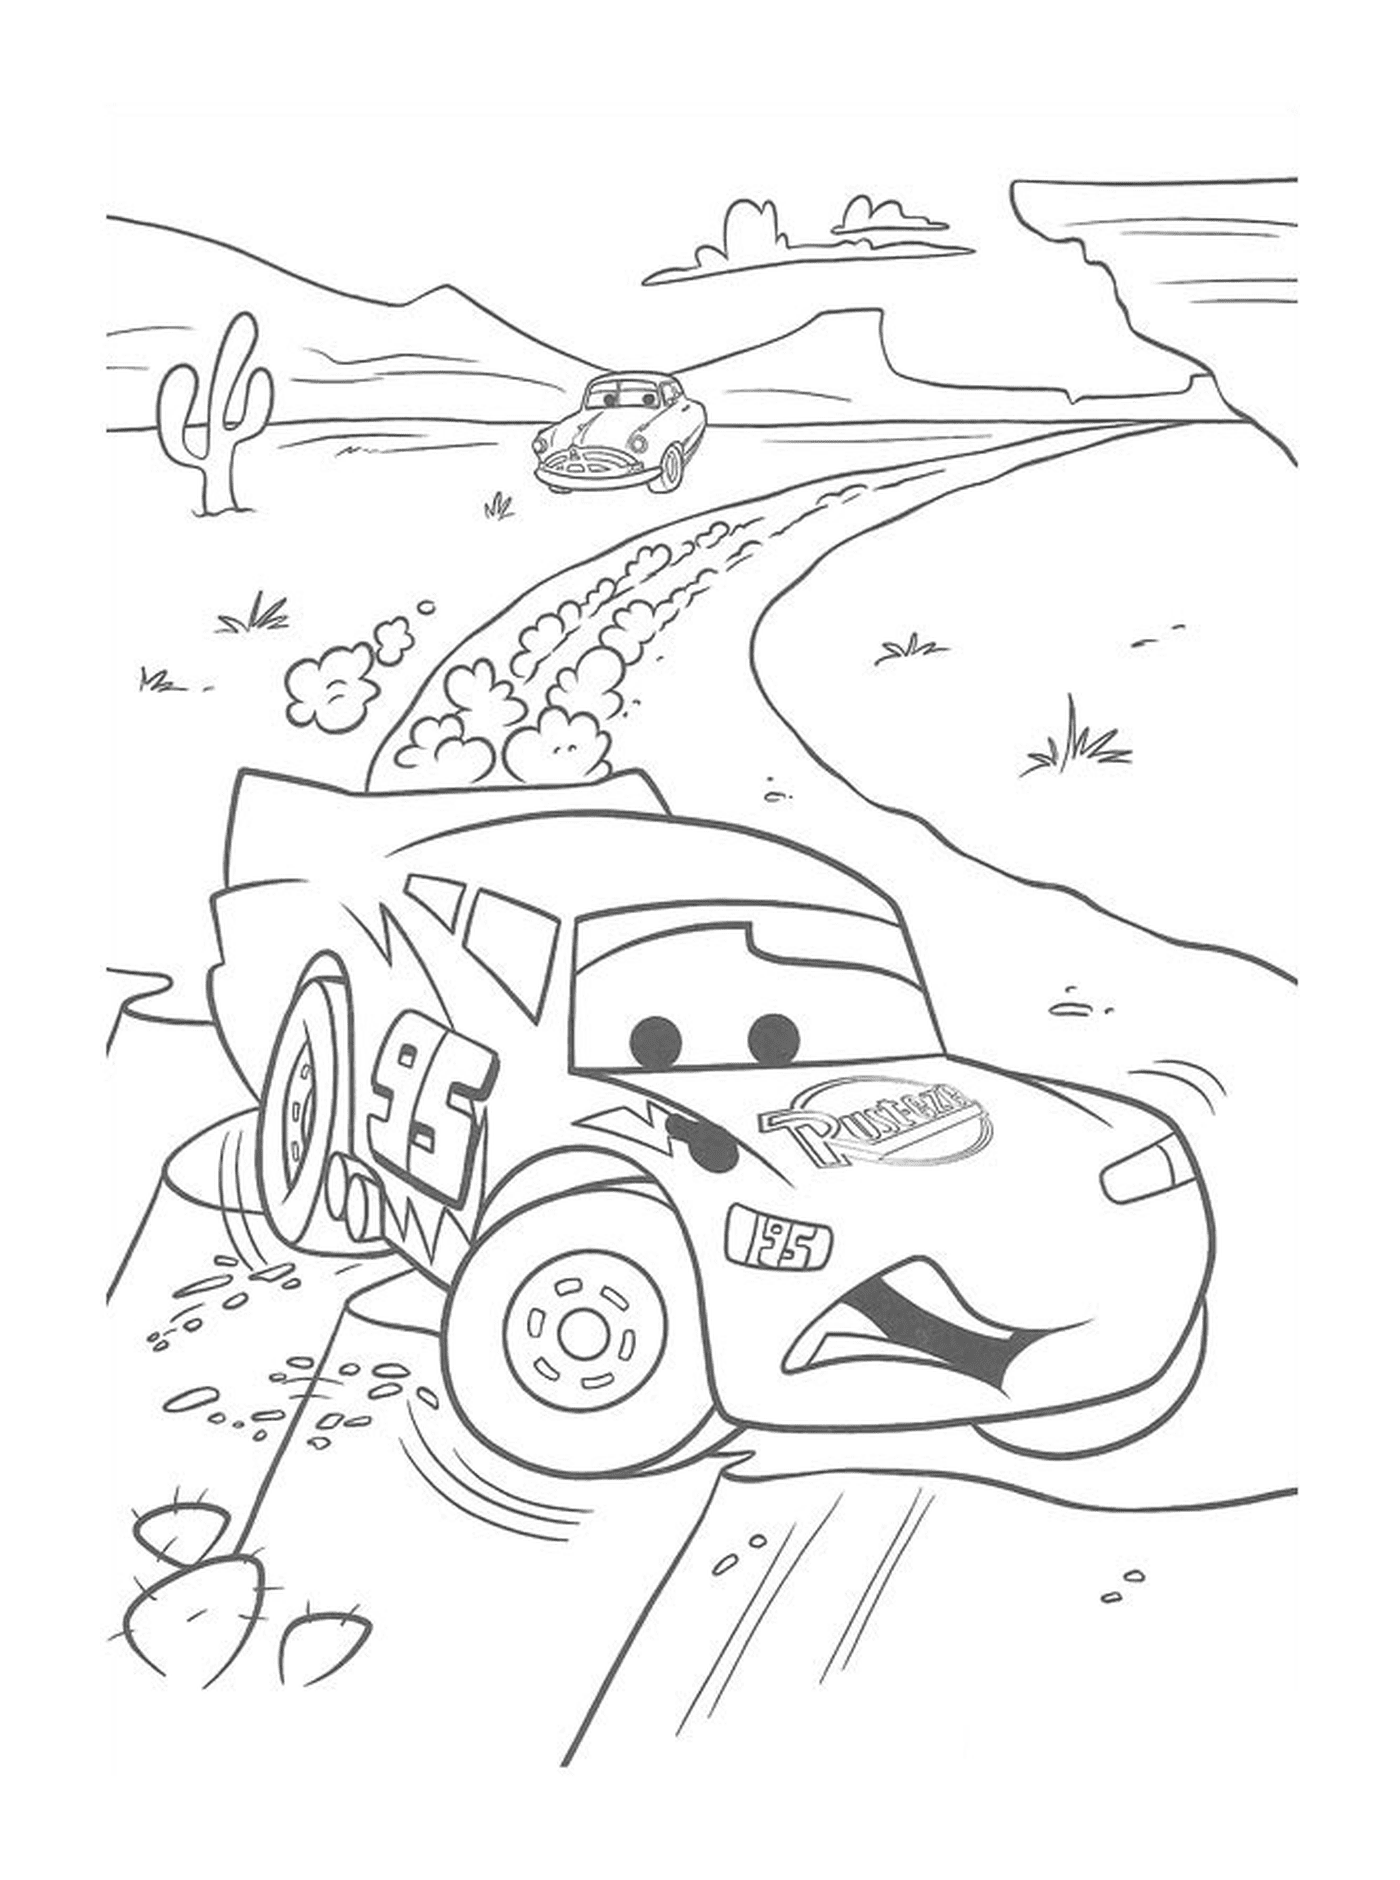   Flash McQueen près d'une falaise avec des voitures 